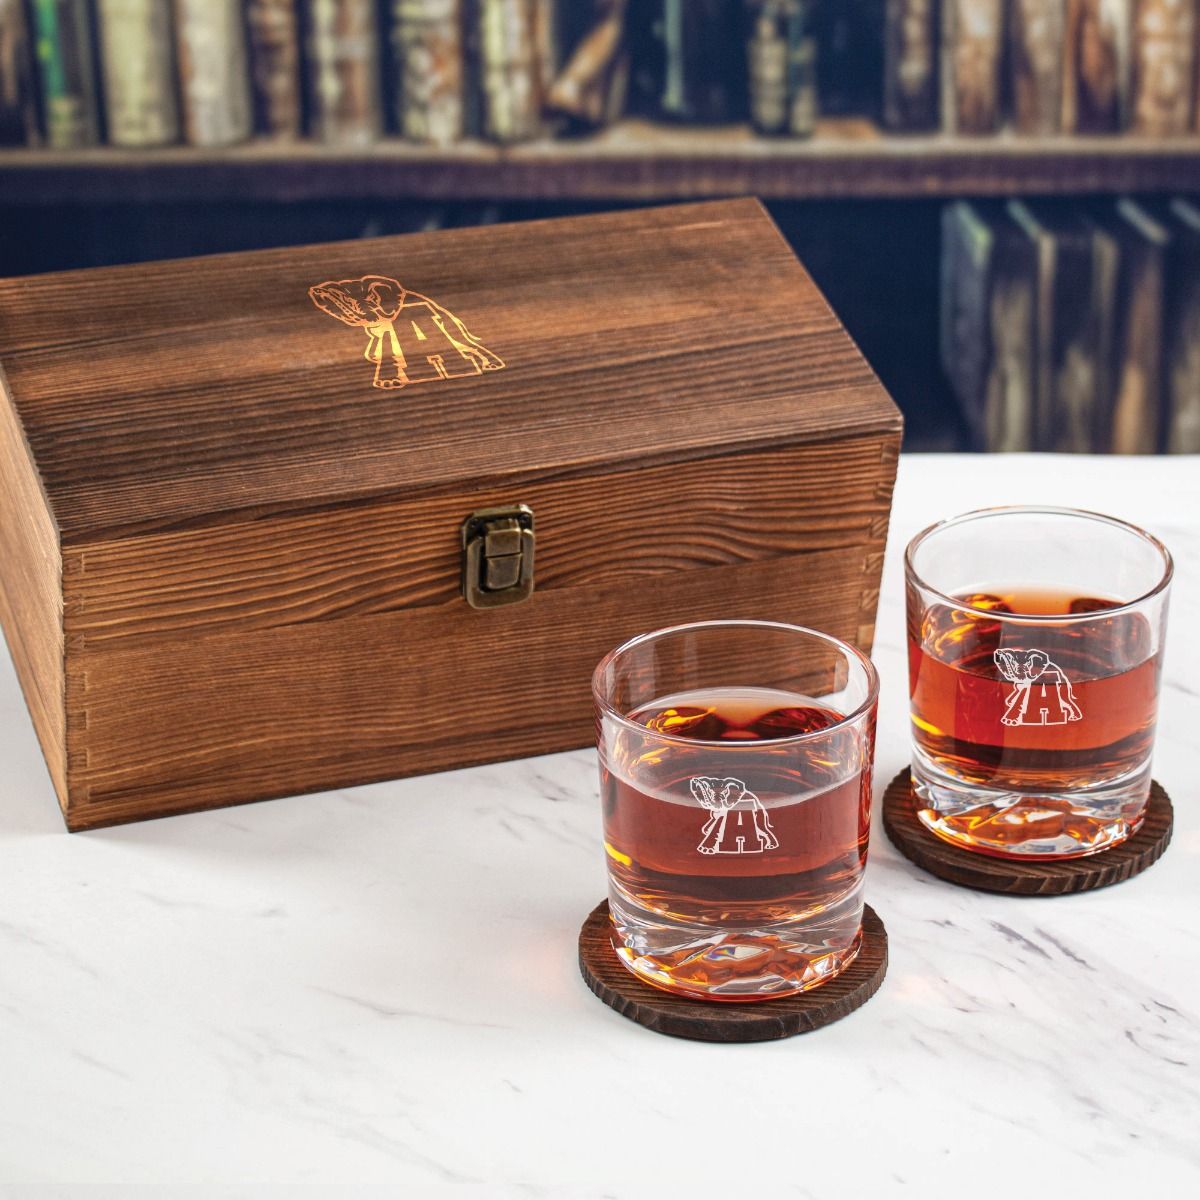 wood whiskey box